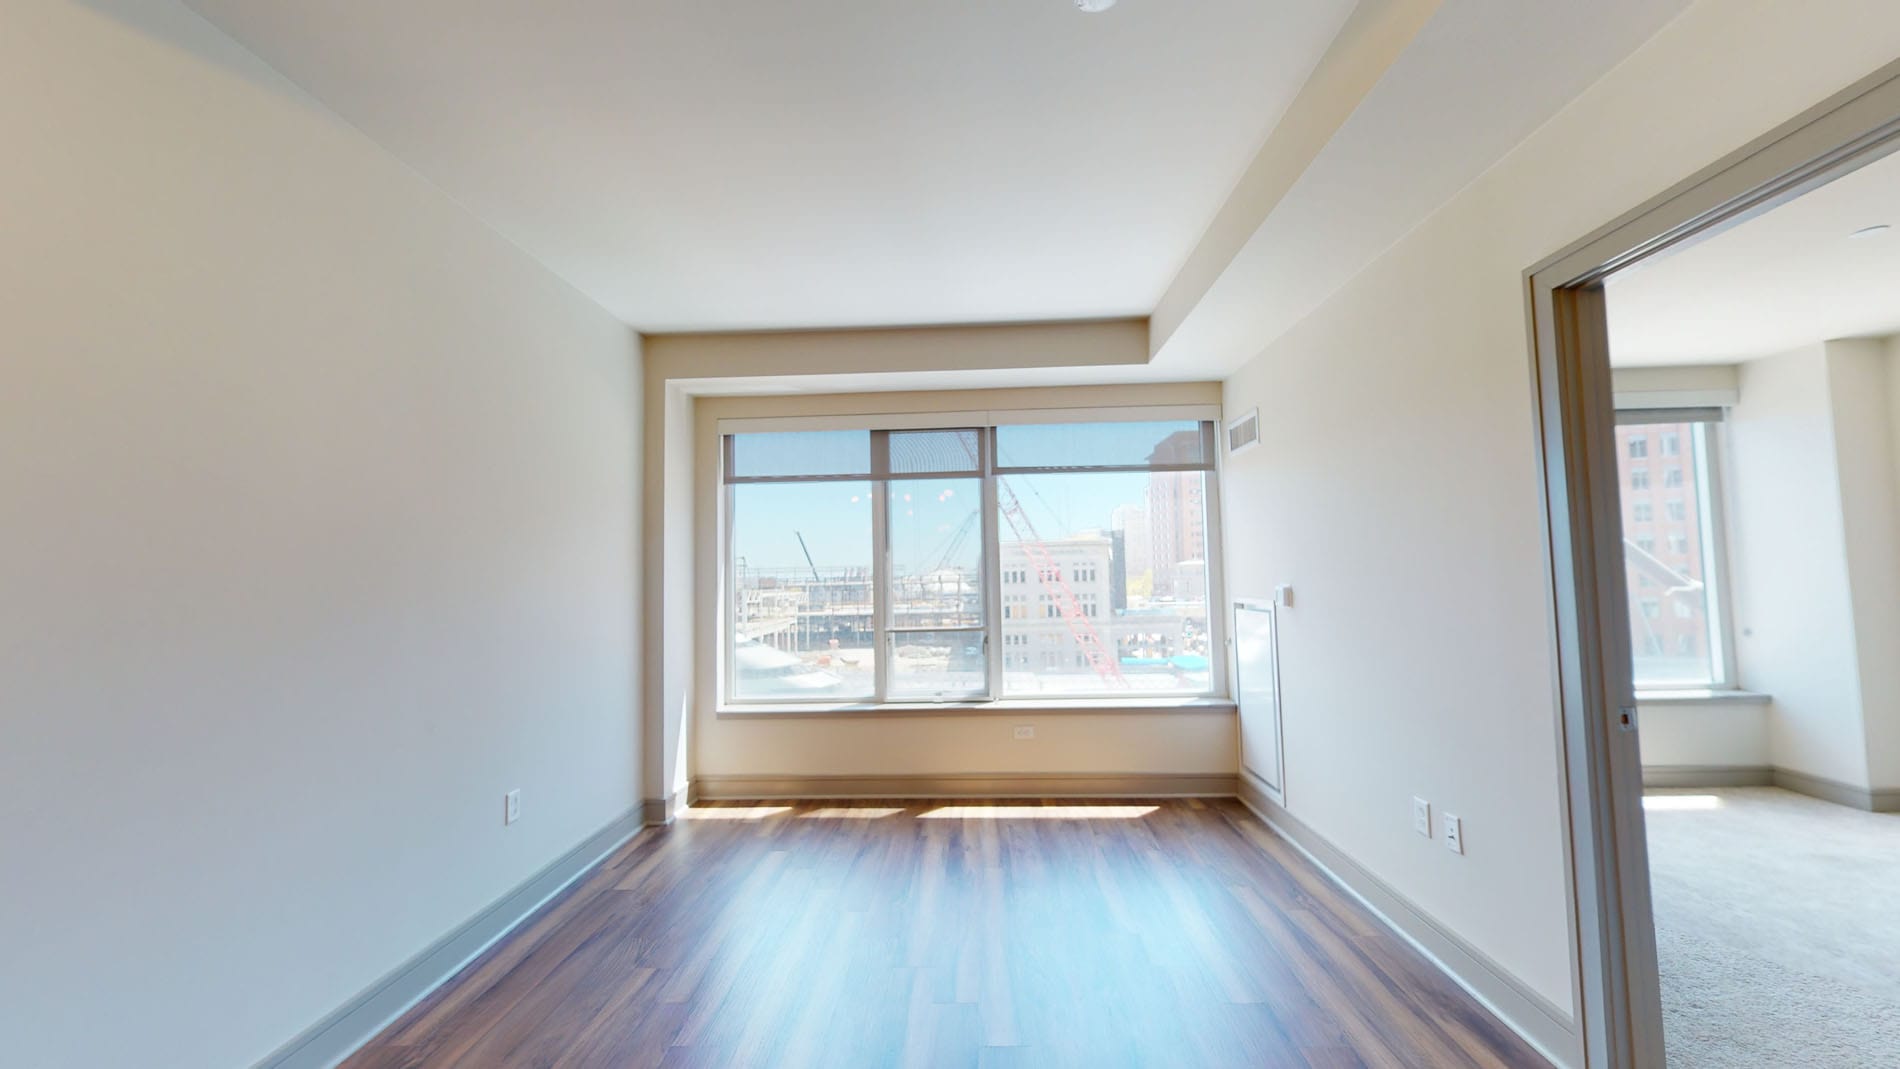 Photos of apartment on Pier 4 Blvd.,Boston MA 02210